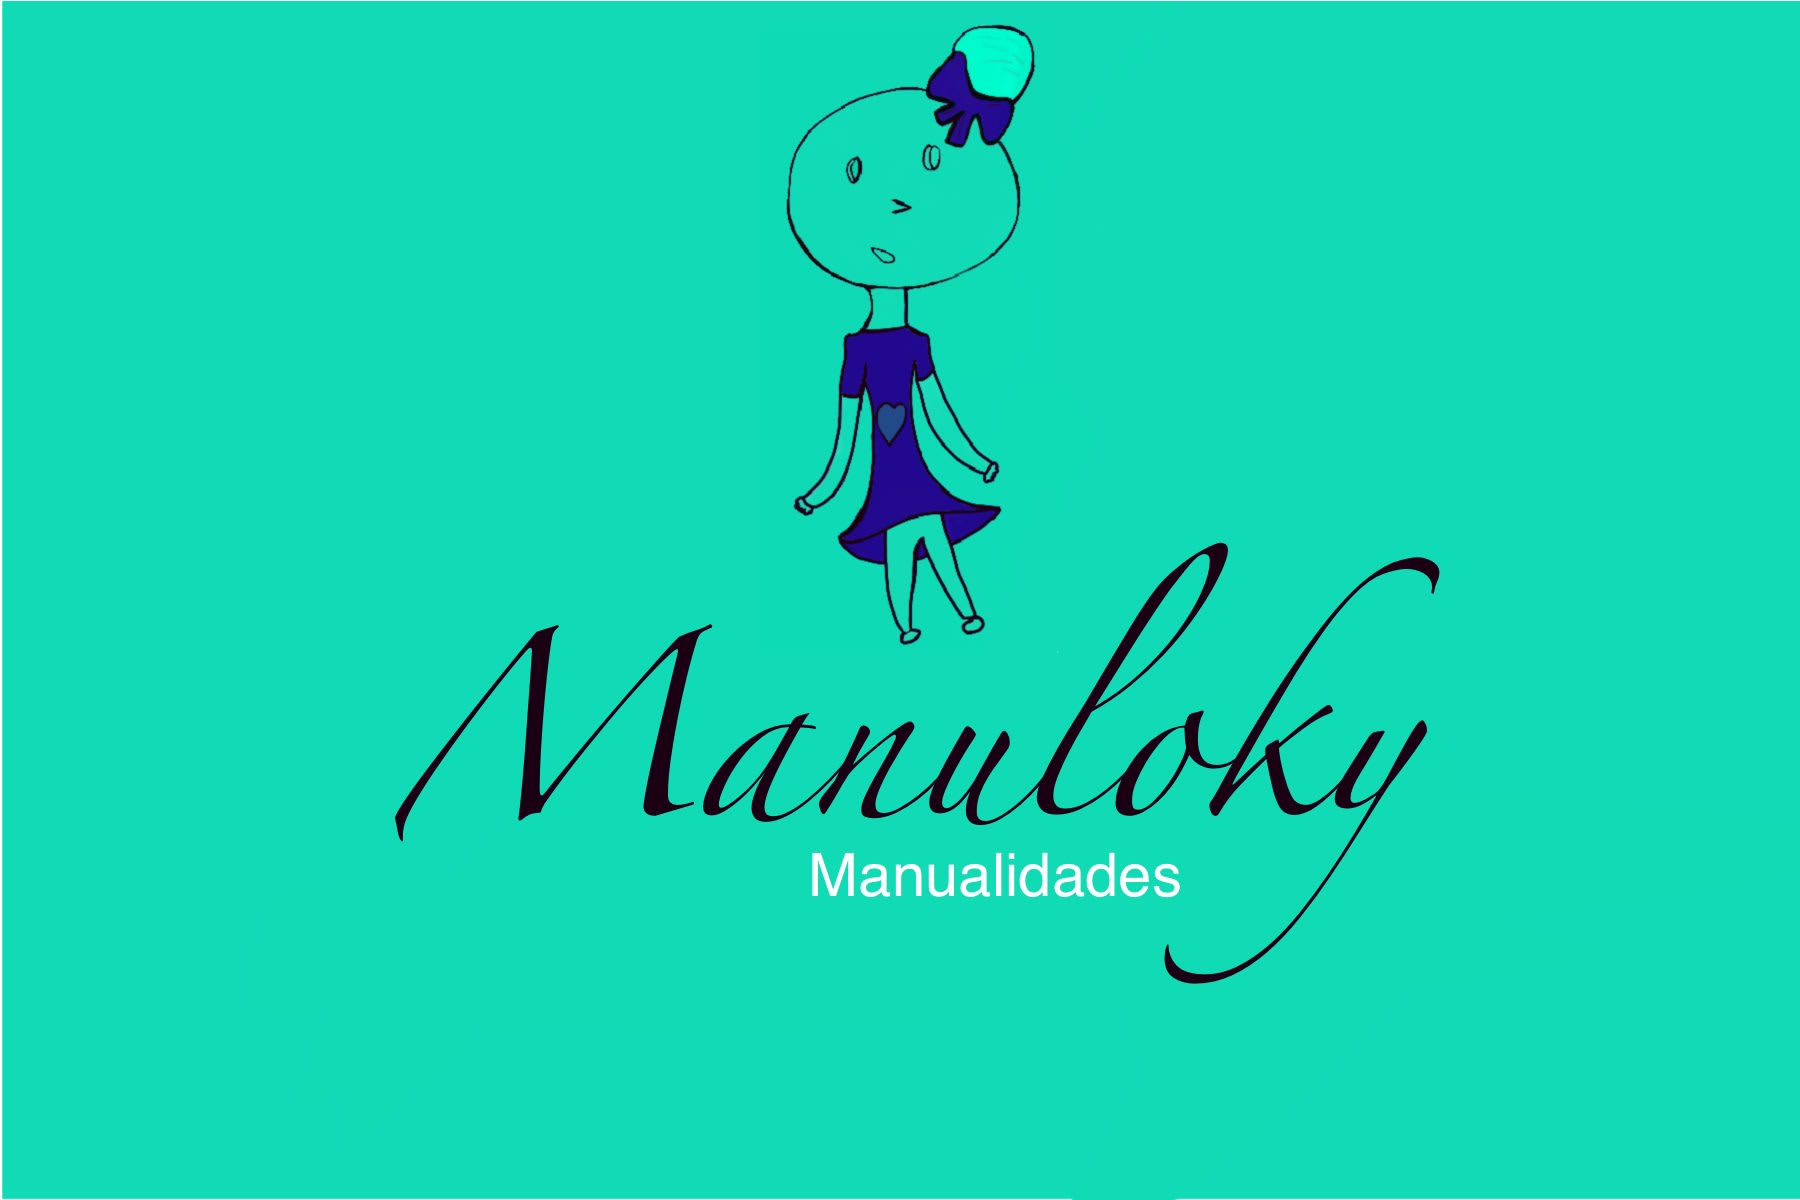 Manuloky